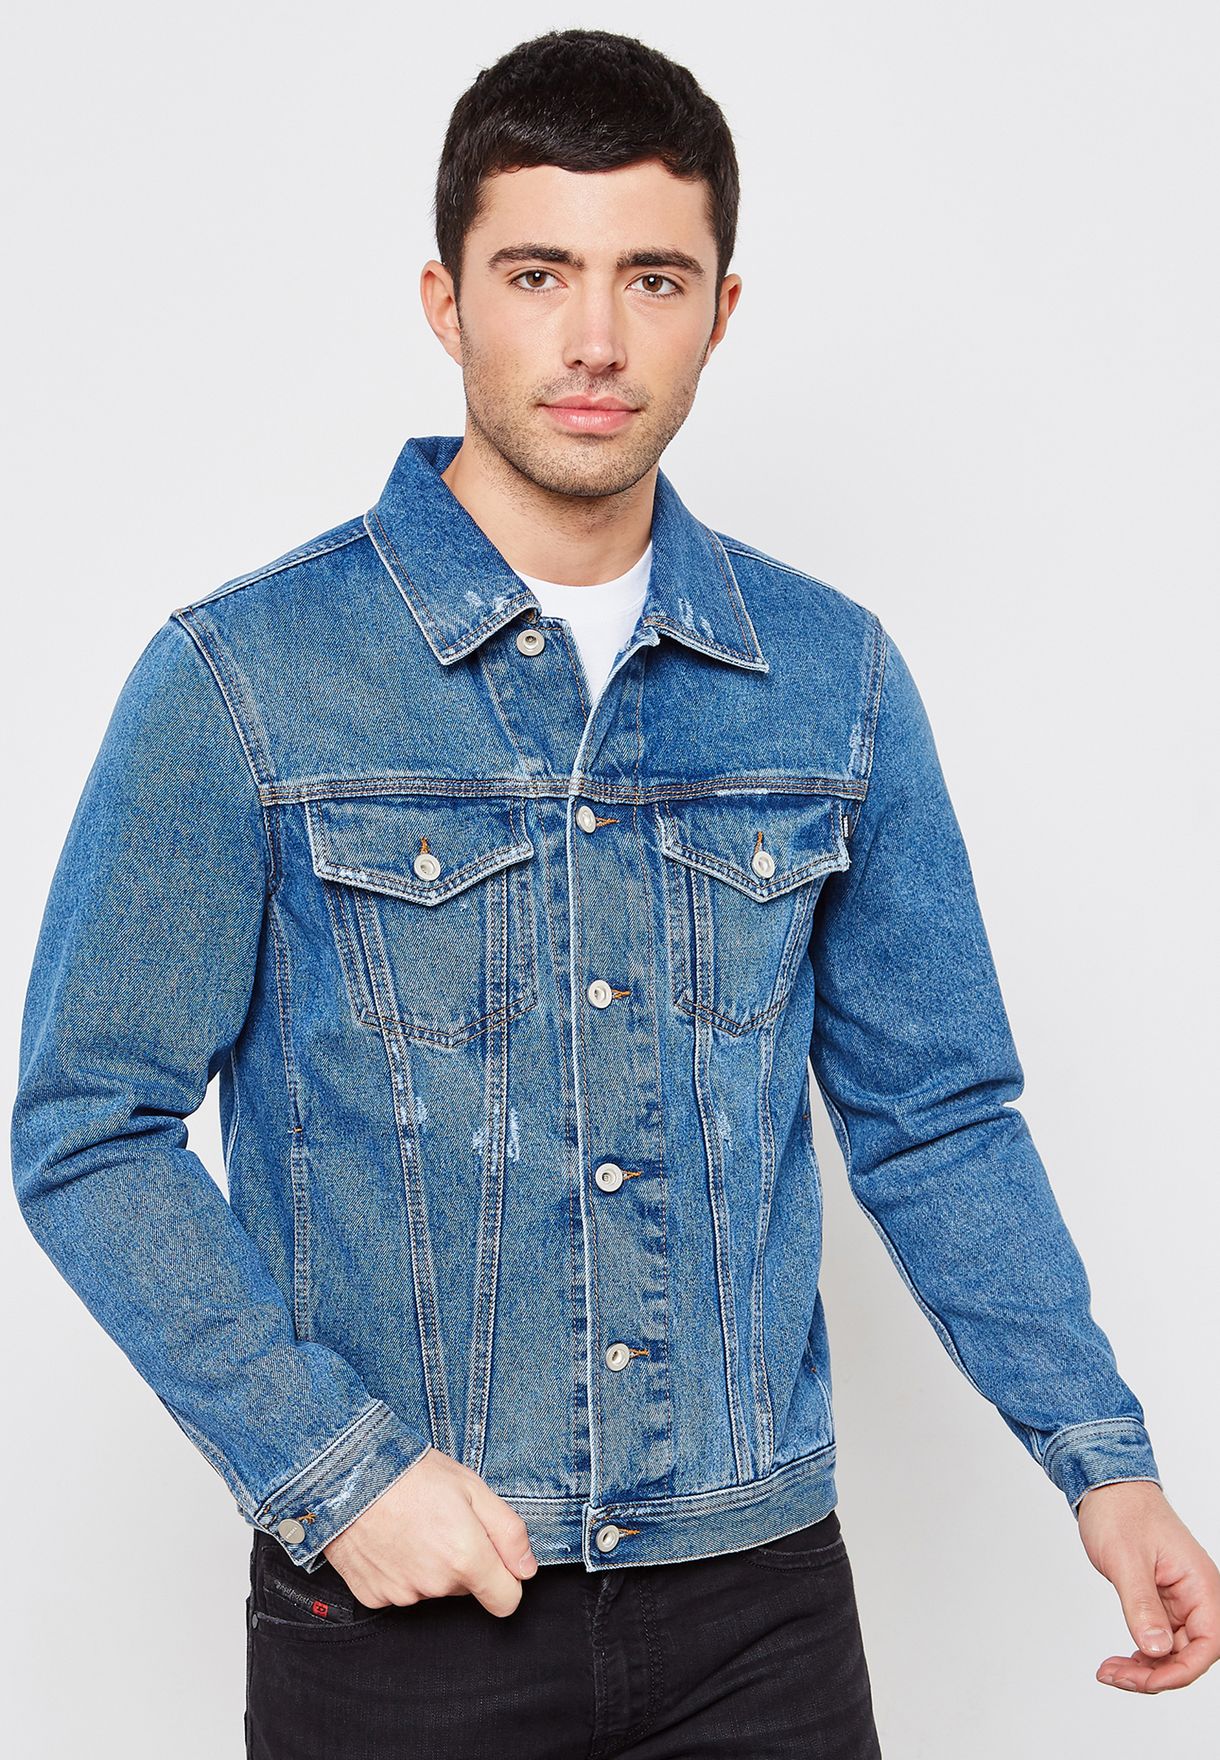 diesel jeans jacket mens